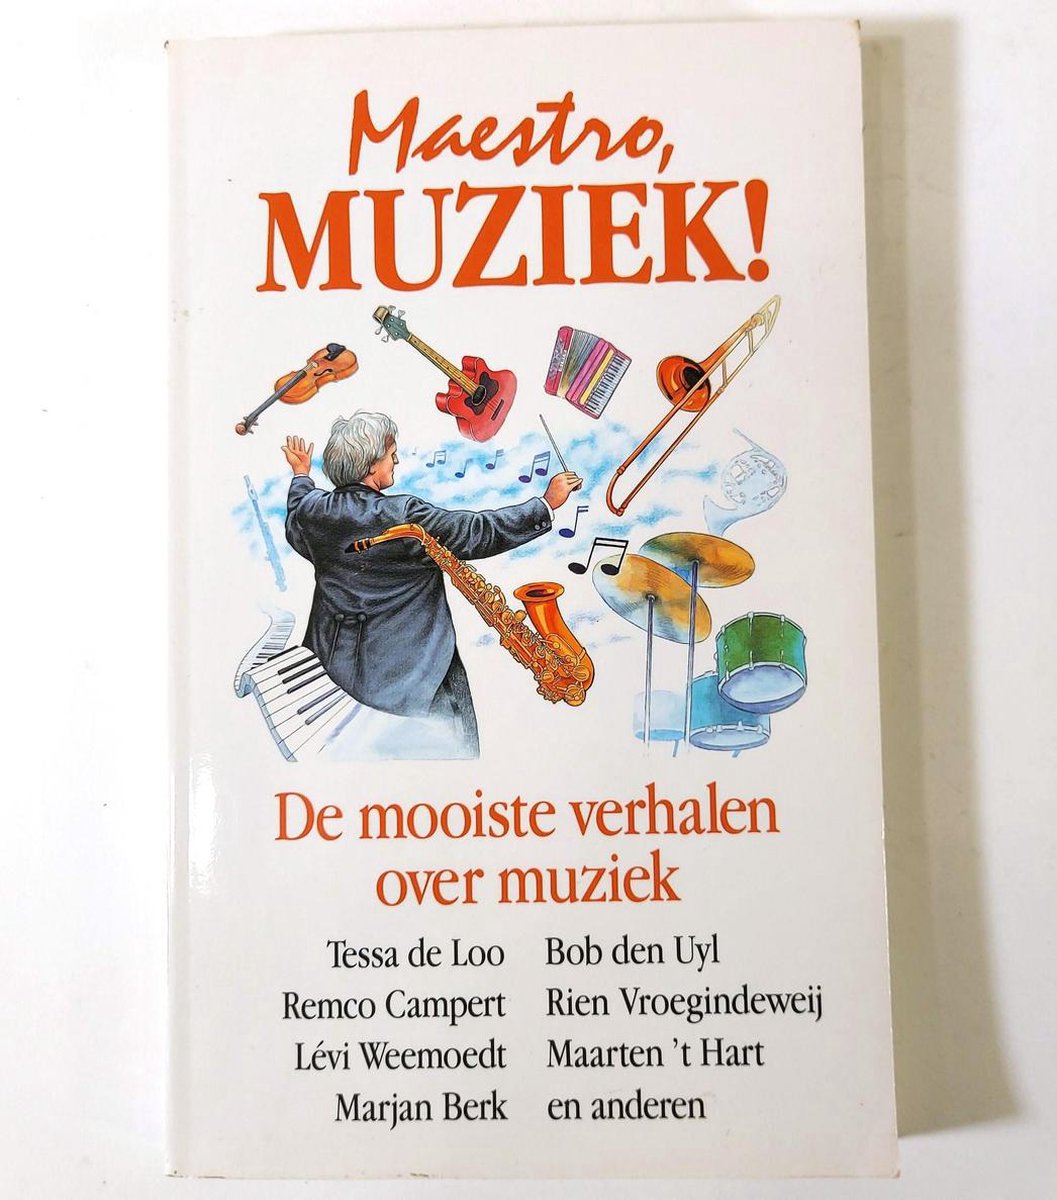 Maestro muziek! de mooiste verhale